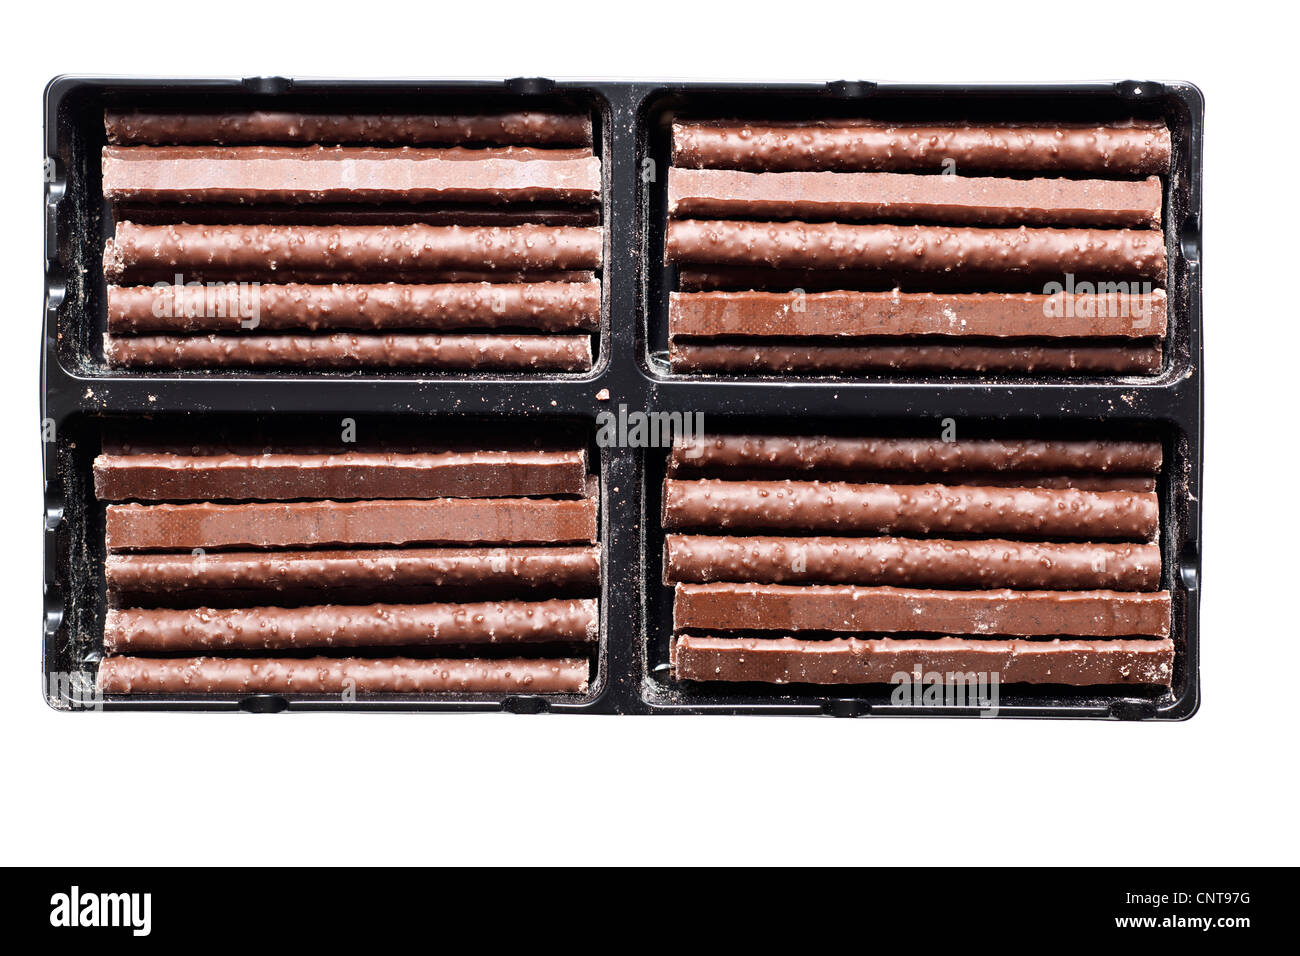 Croccanti bastoncini di cioccolato in un vassoio di plastica Foto Stock